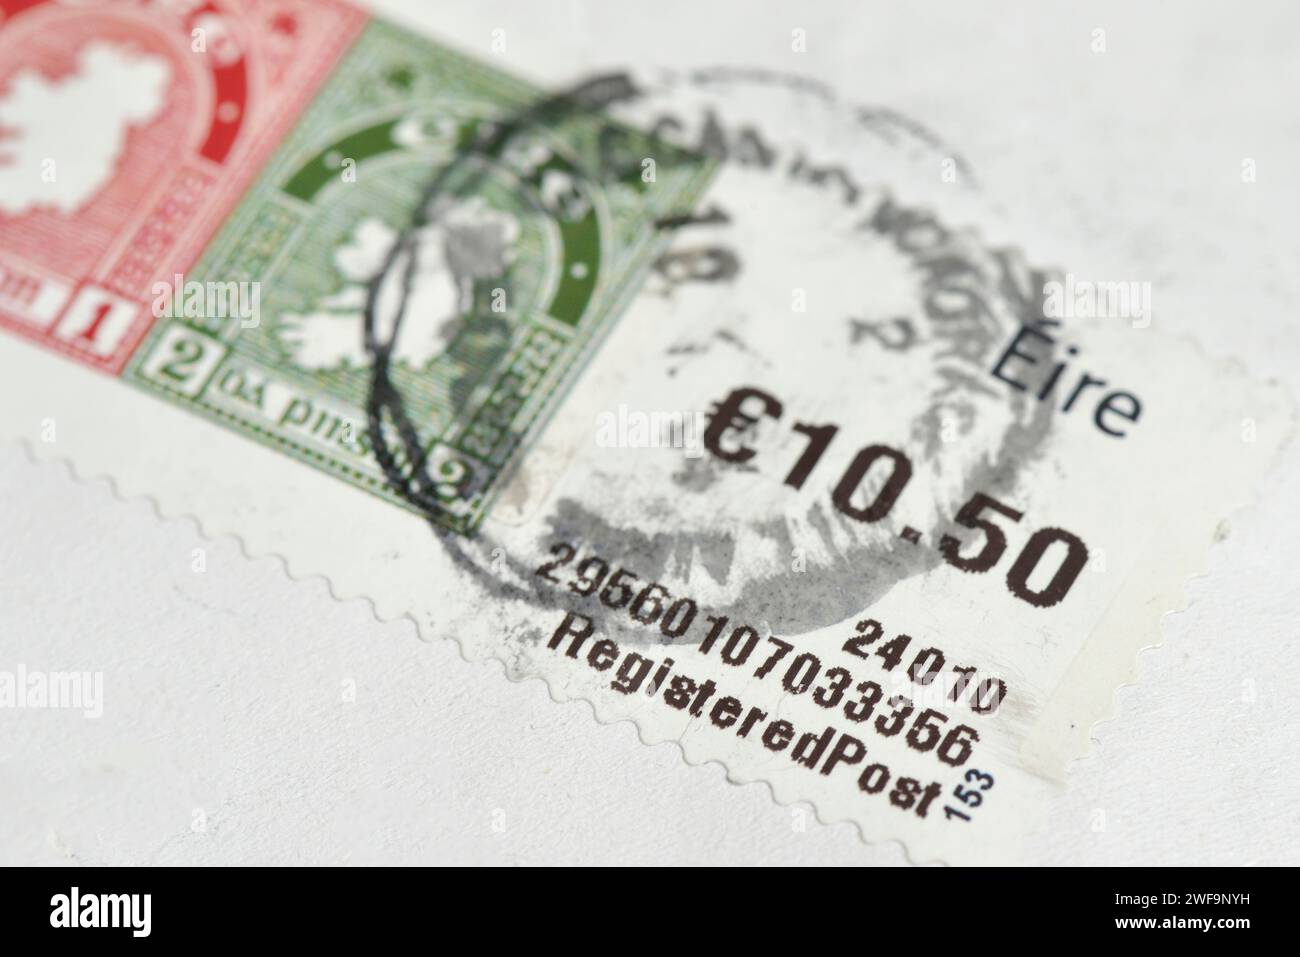 Briefmarke der irischen Eintragungsposition in Höhe von 10,50 Euro auf weißem Umschlag, Irland, Europa, EU Stockfoto